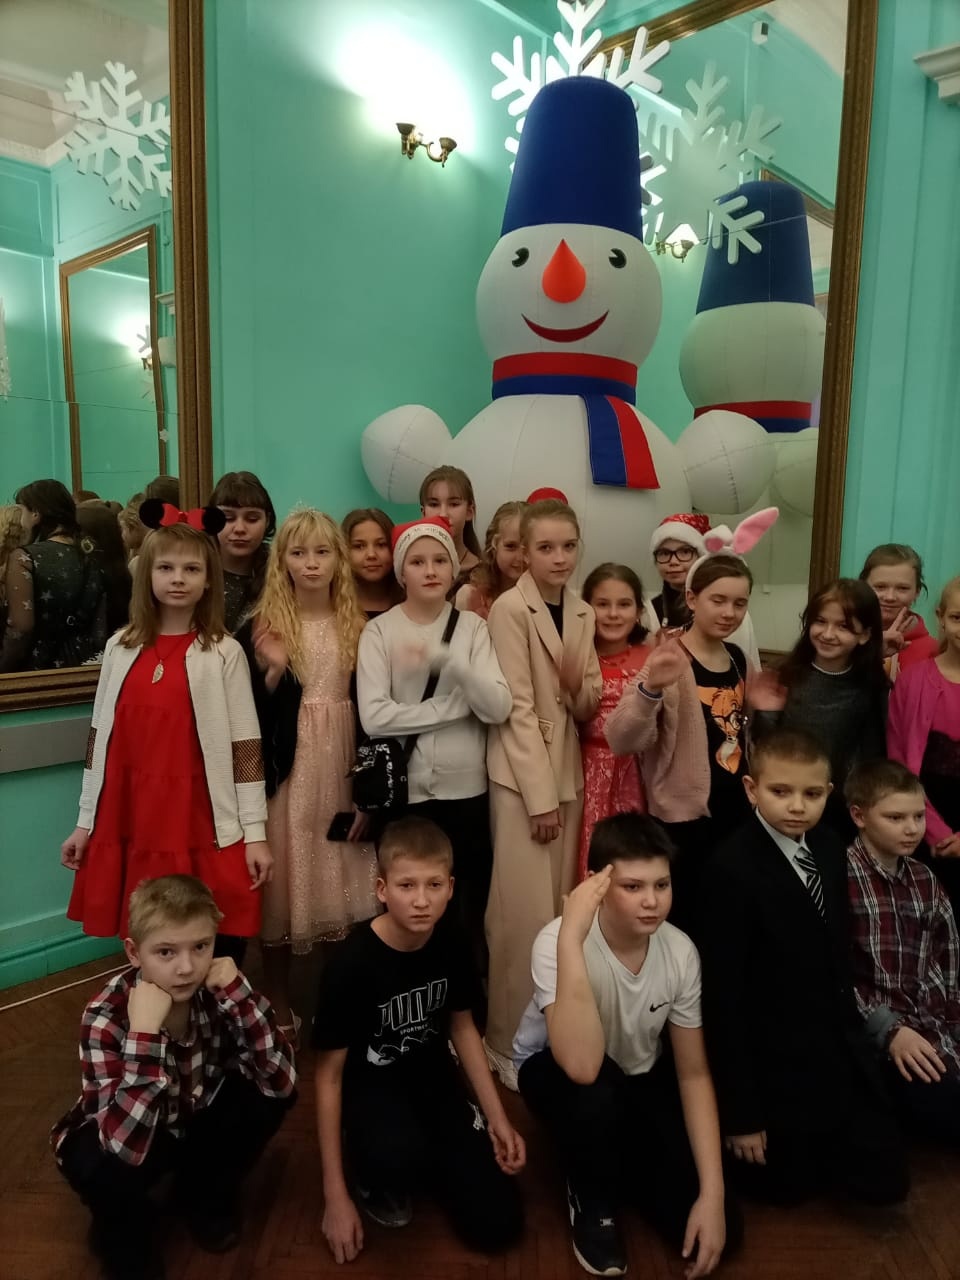 22 декабря, учащиеся 5 класса побывали на новогоднем представлении в ДК.Васильева. Было очень здорово и весело. Дети довольны, спасибо организаторам этого праздника..